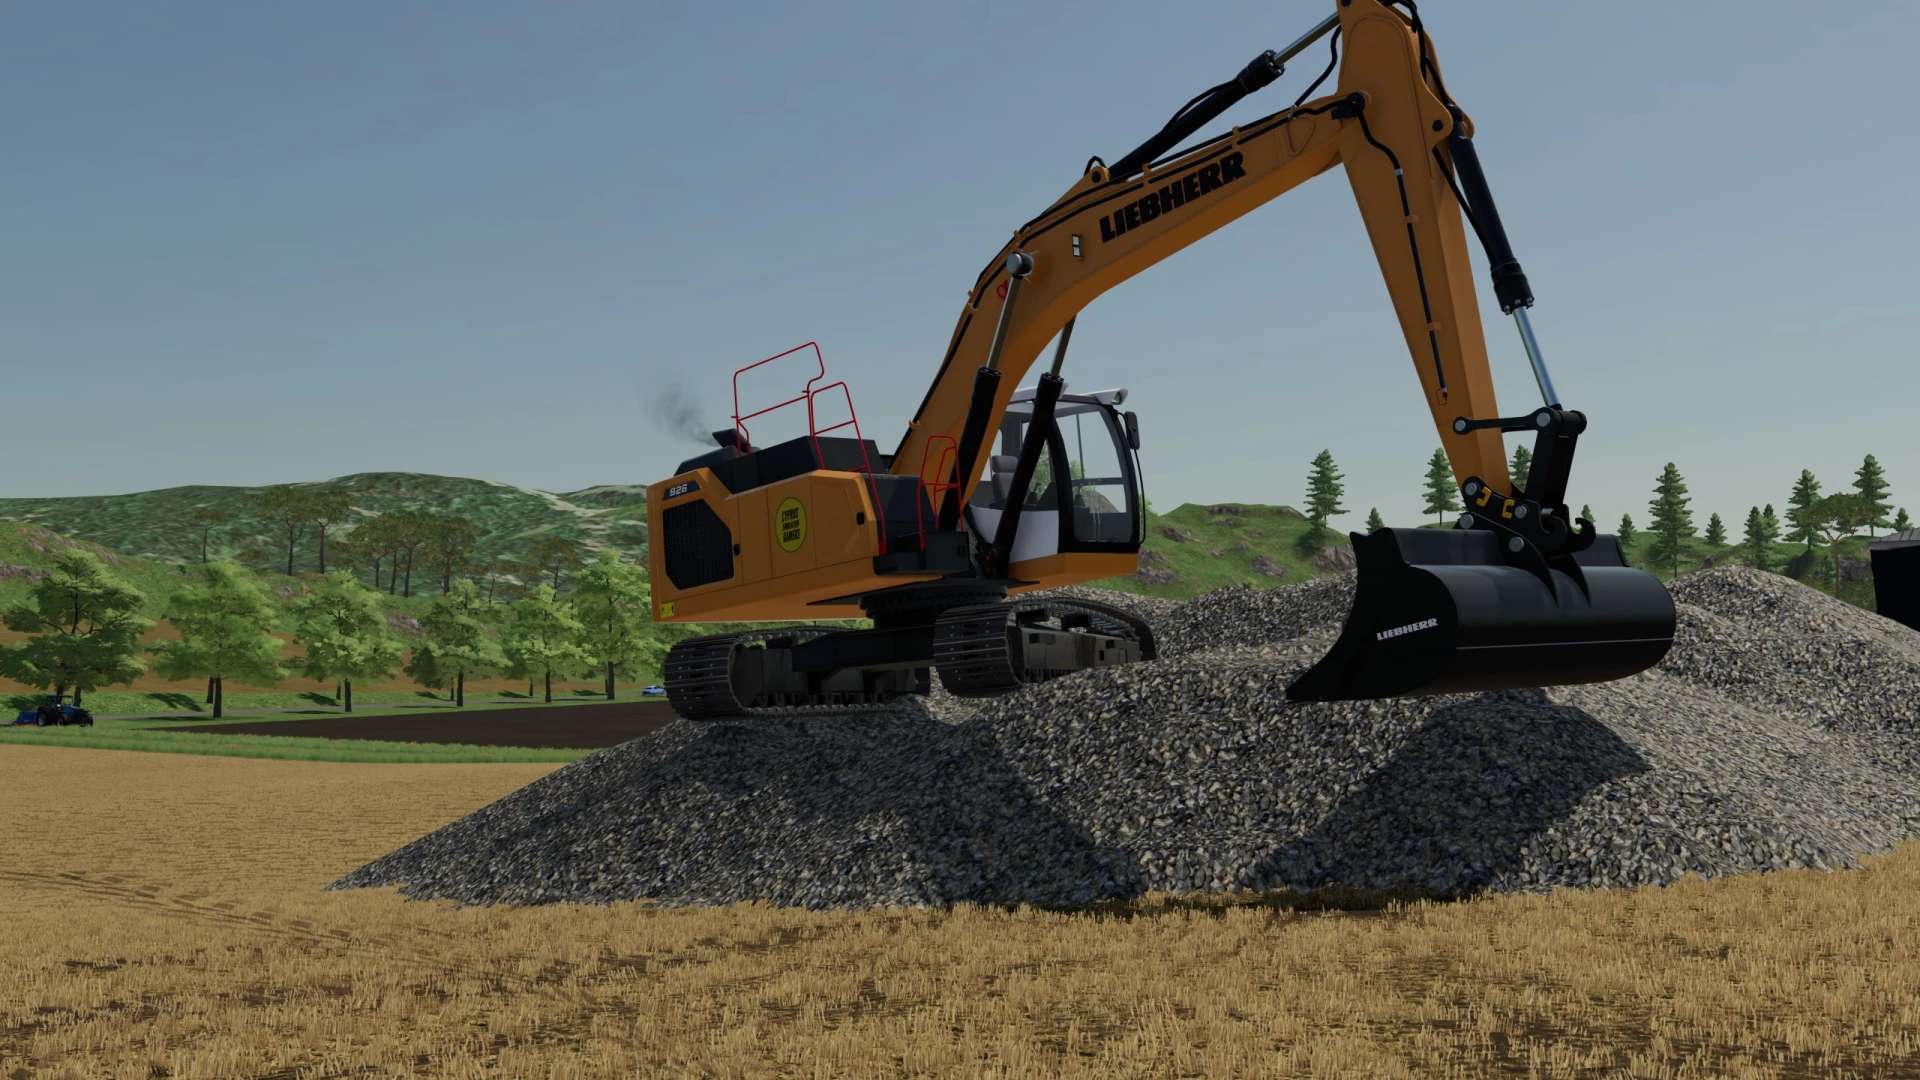 liebherr-r926-excavator-v1-0-fs22-farming-simulator-22-mod-fs22-mod